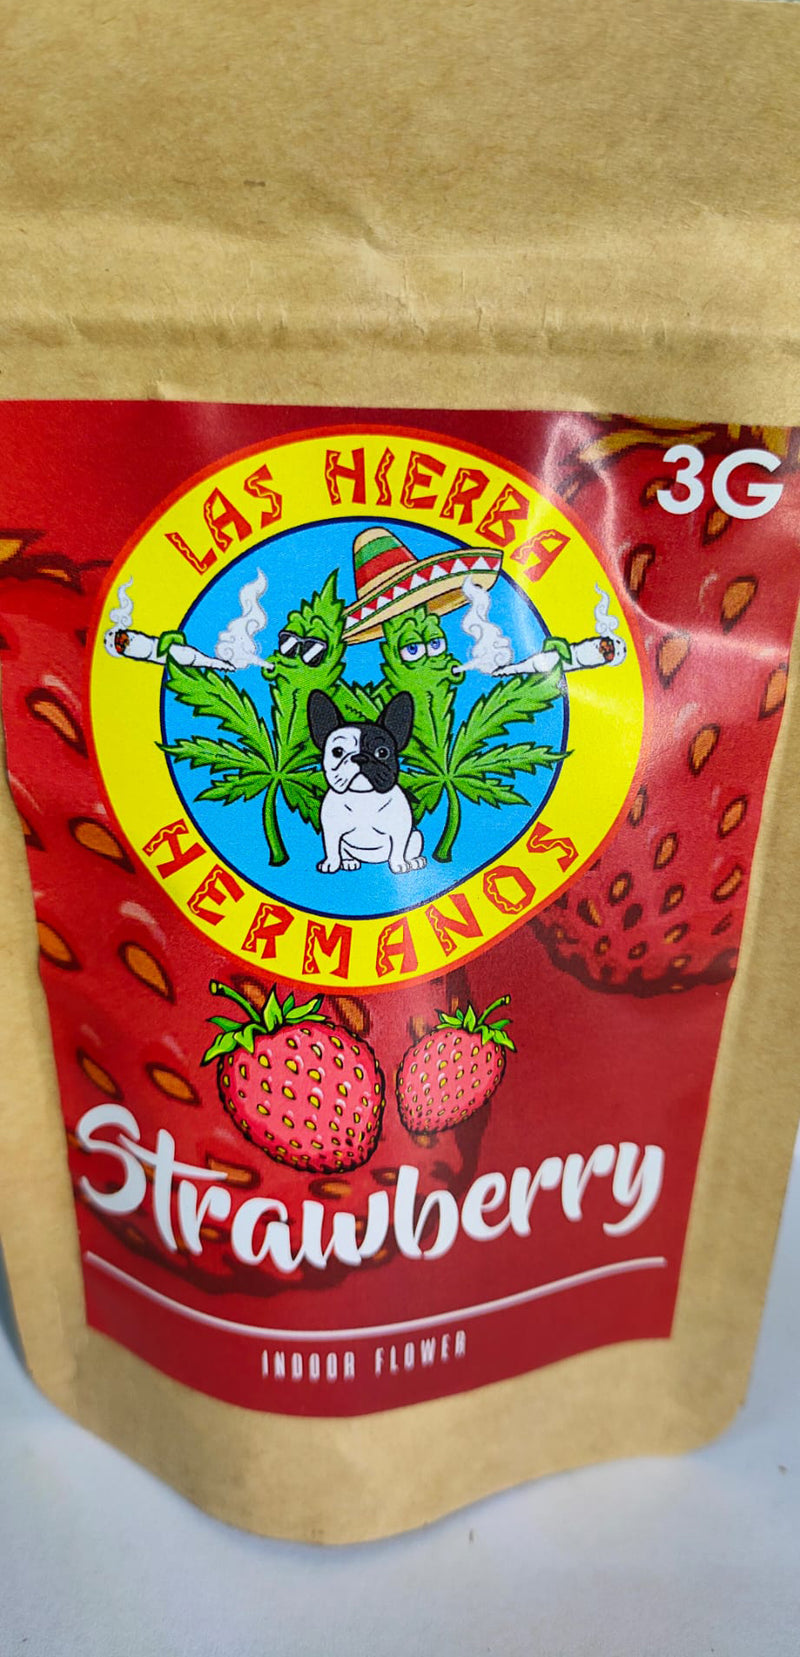 Las Hierba Hermanos Strawberry 3g